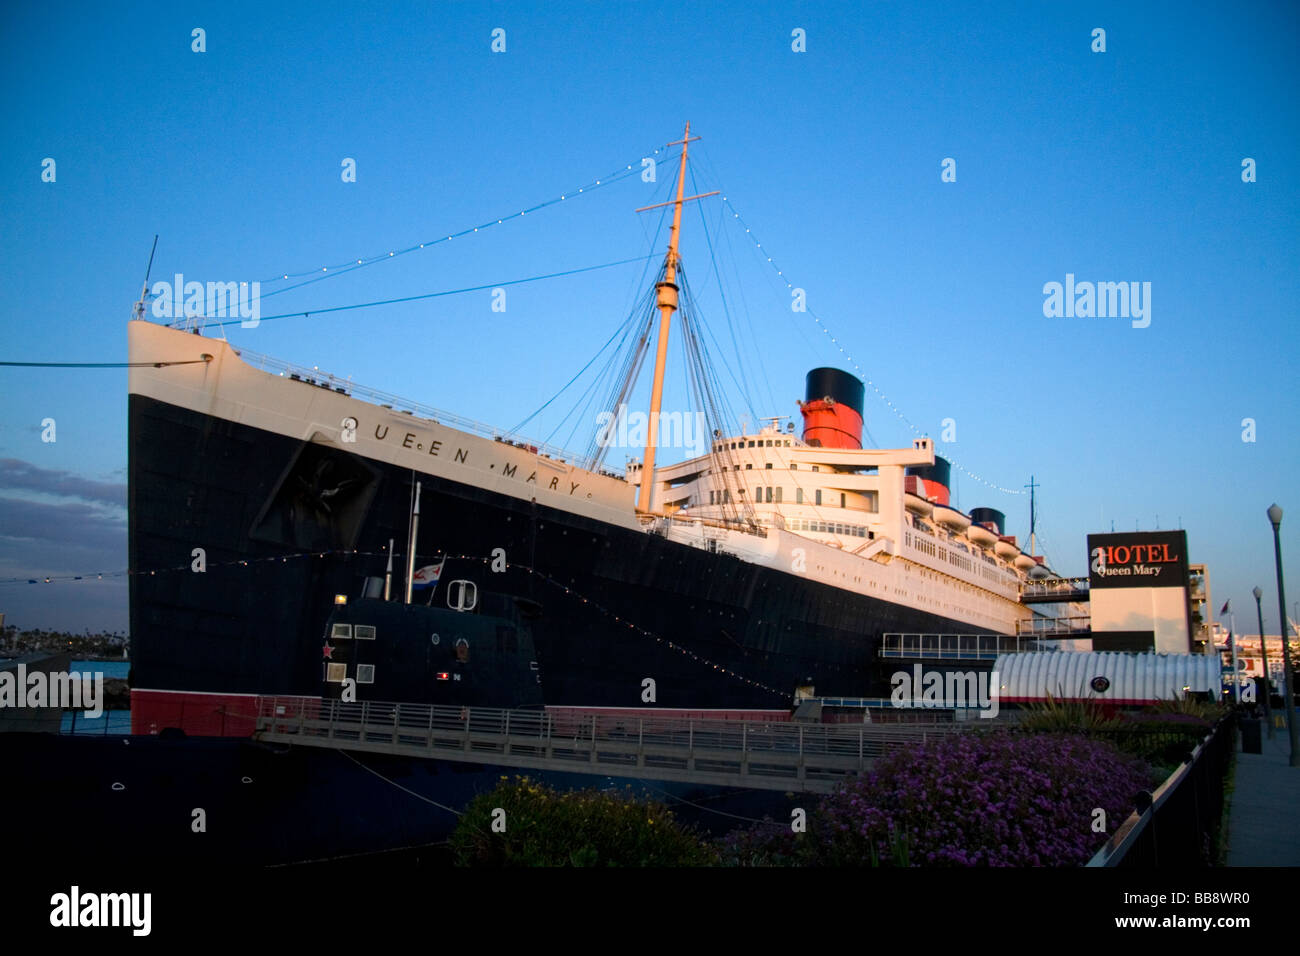 La regina Maria museo e hotel nave alla lunga spiaggia Califorina USA Foto Stock